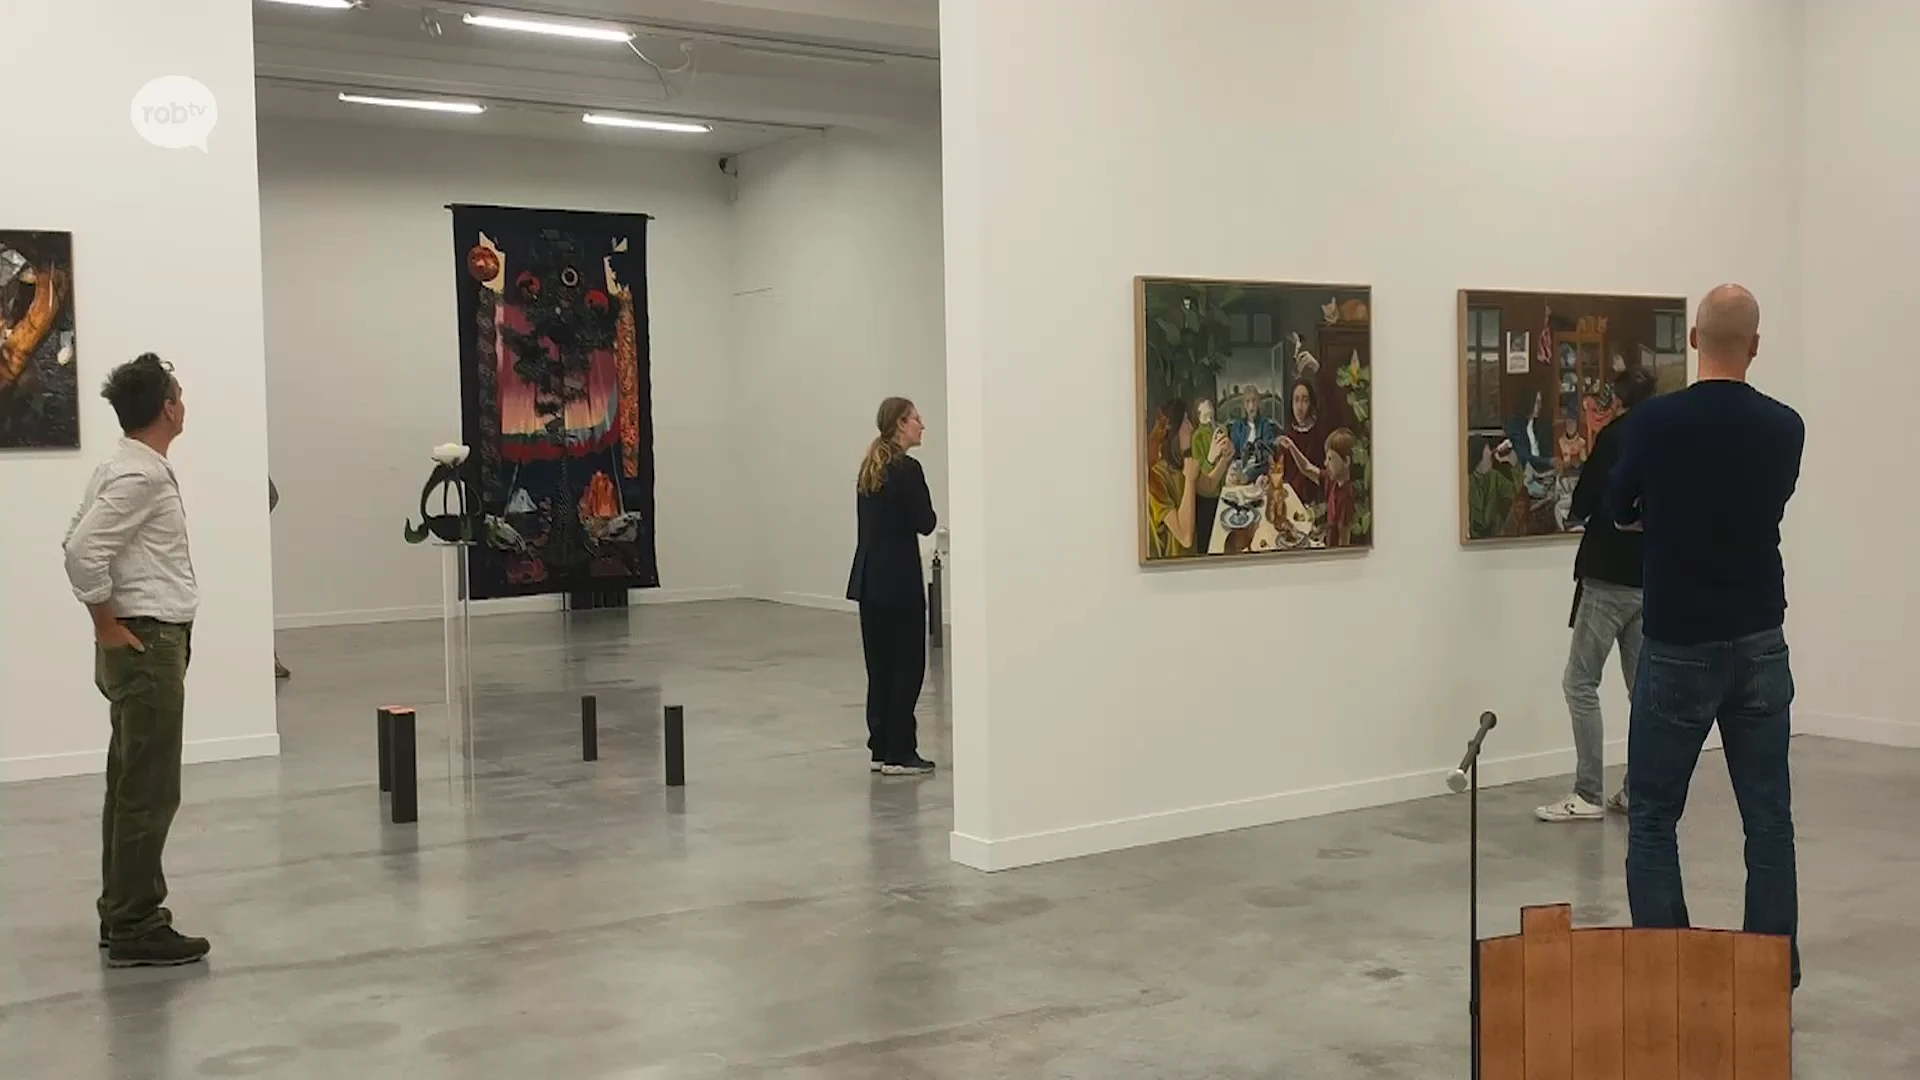 Museum M lanceert nieuwe tentoonstelling met werken van kunstenaars uit onze regio